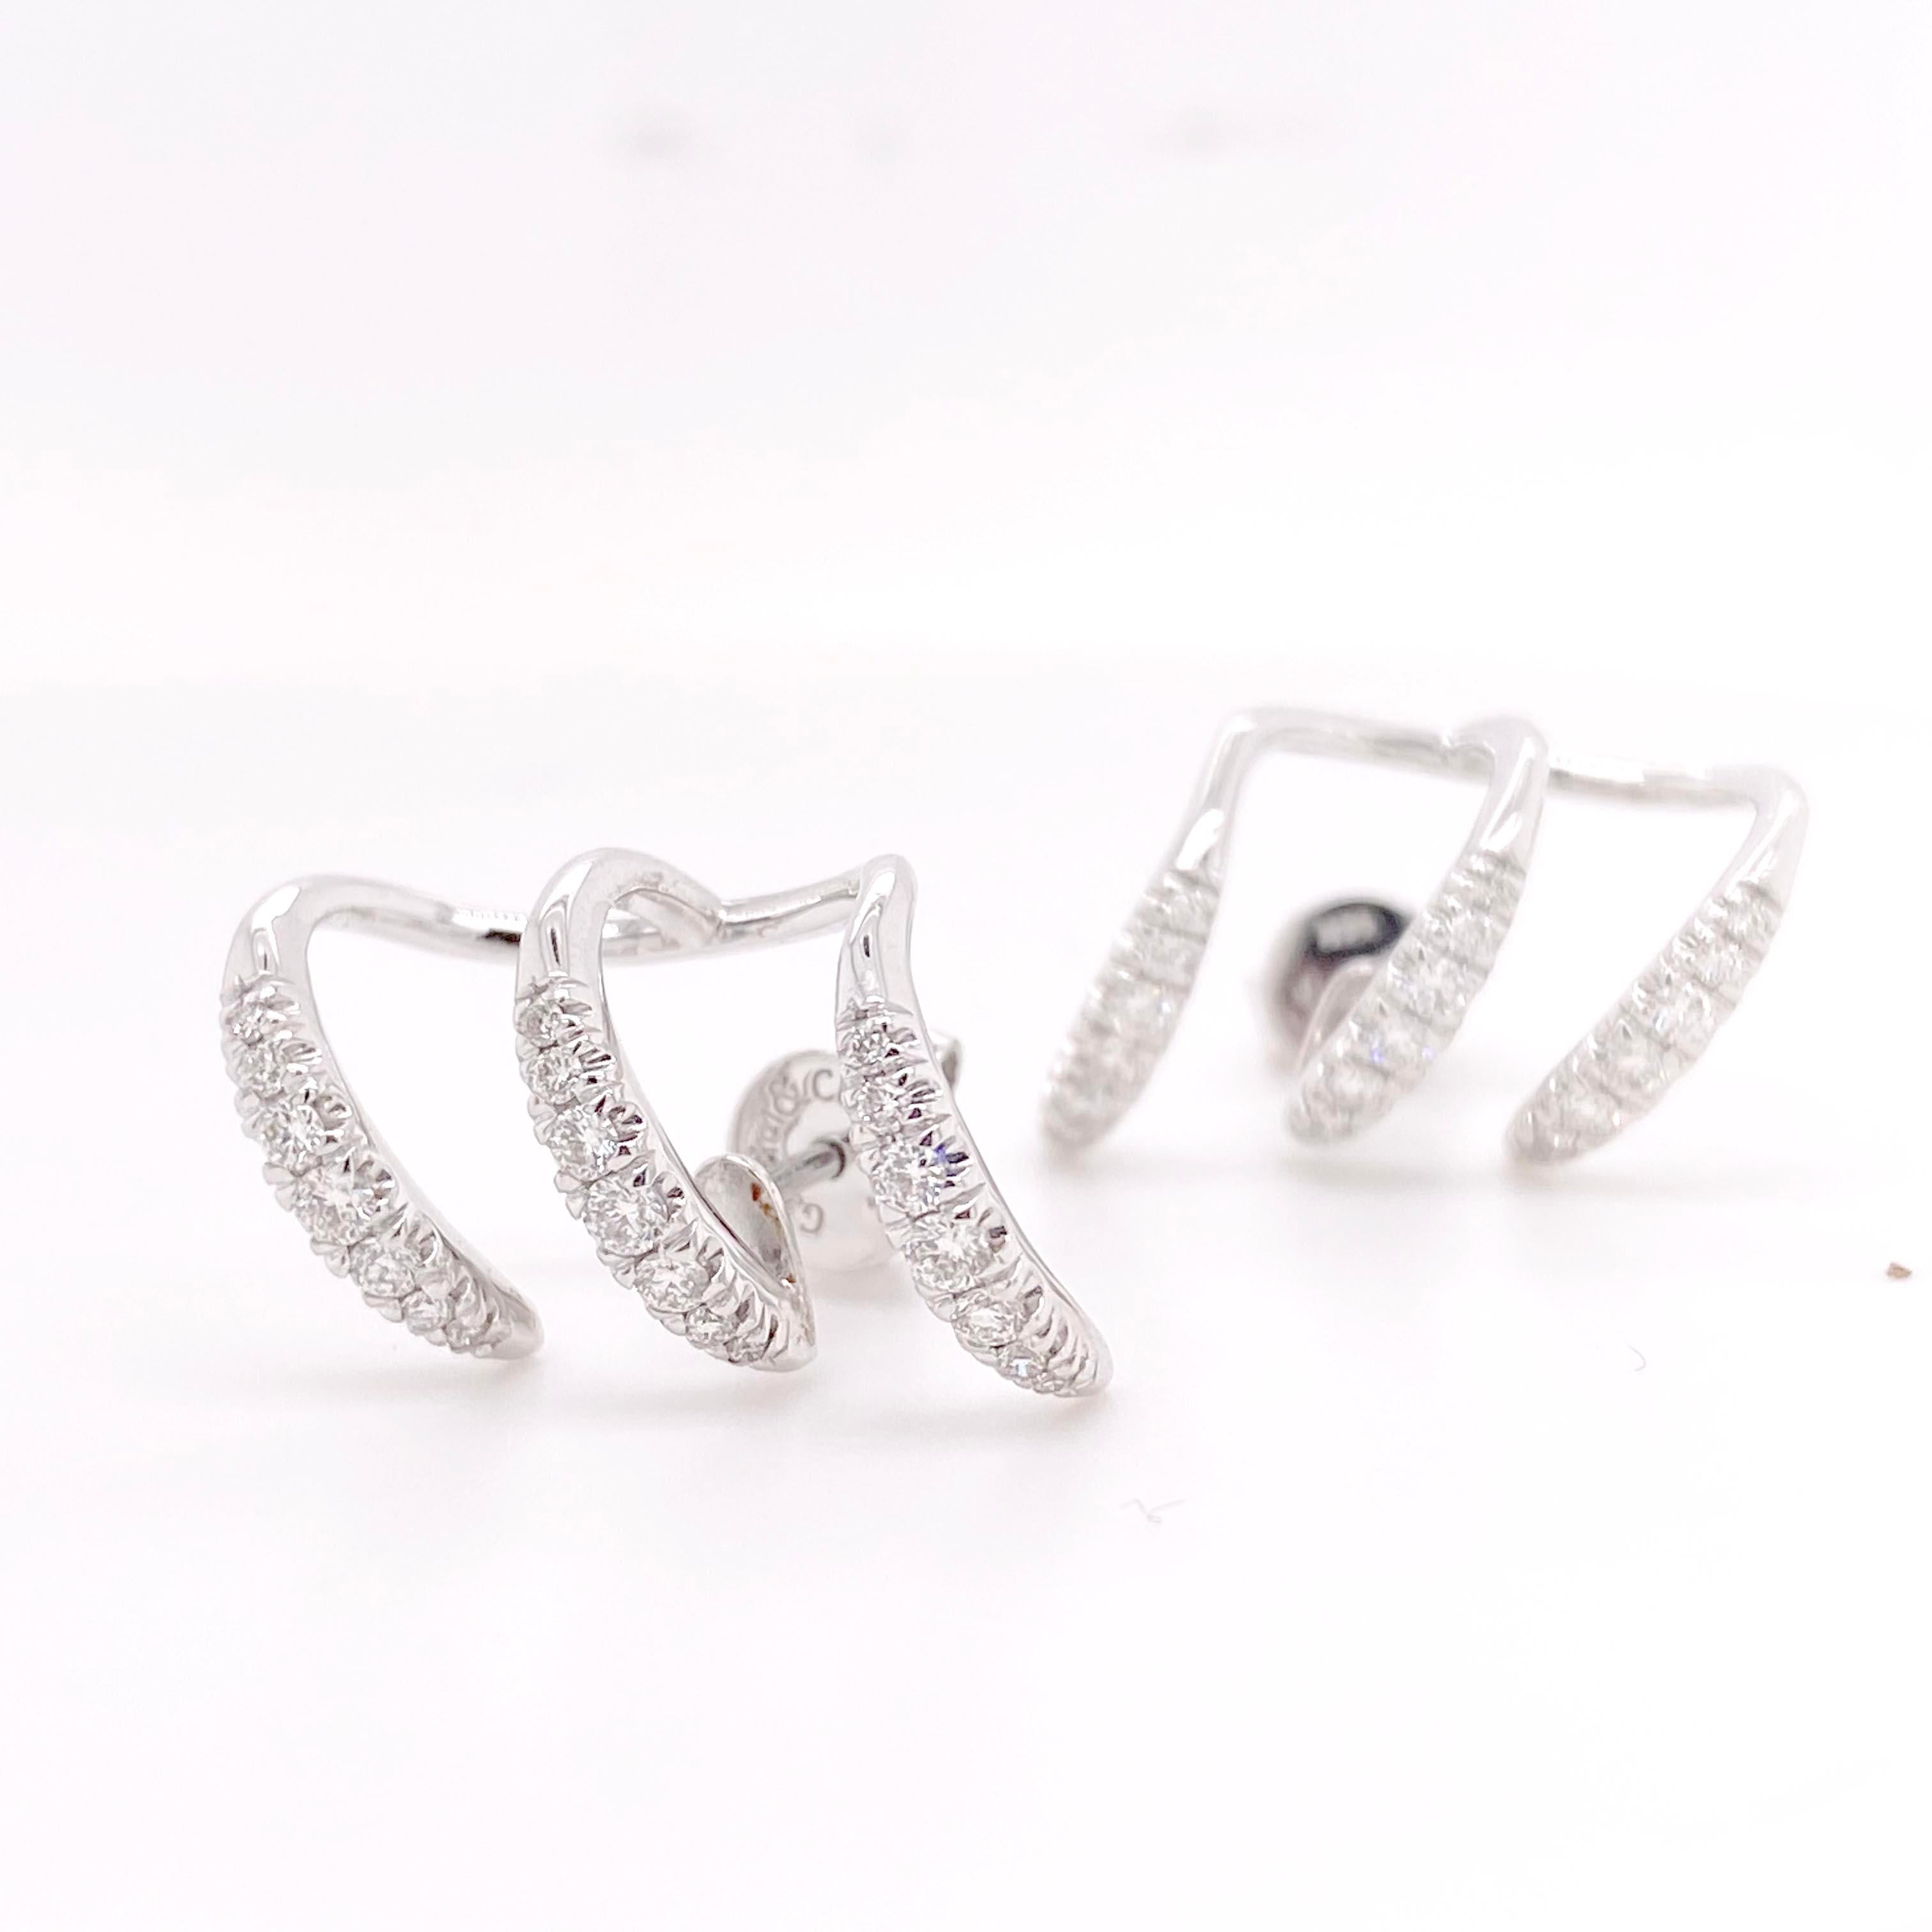 Einzigartige Diamant-Ohrringe mit strahlend weißen, funkelnden Naturdiamanten! Diese Ohrringe haben ein lustiges und dynamisches Design, das Ihnen einen individuellen Multi-Piercing-Look verleiht, während Sie mit nur einem Paar Ohrringe auskommen!